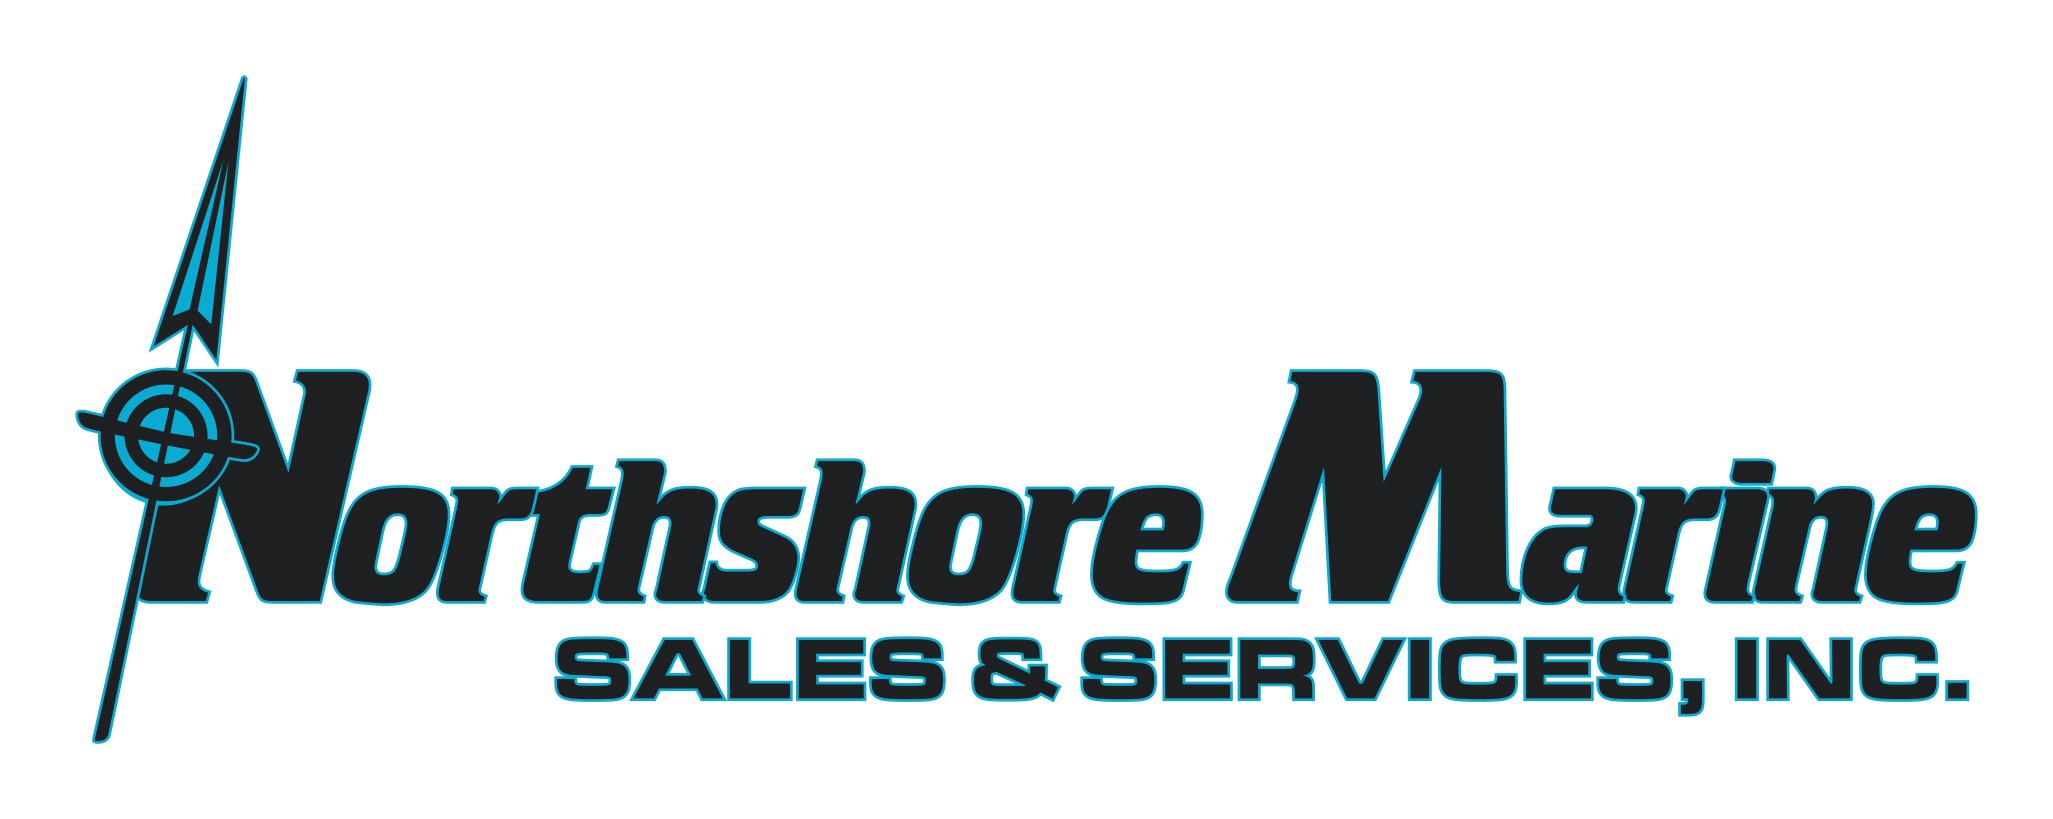 Northshore Marine Sales & Service Inc.